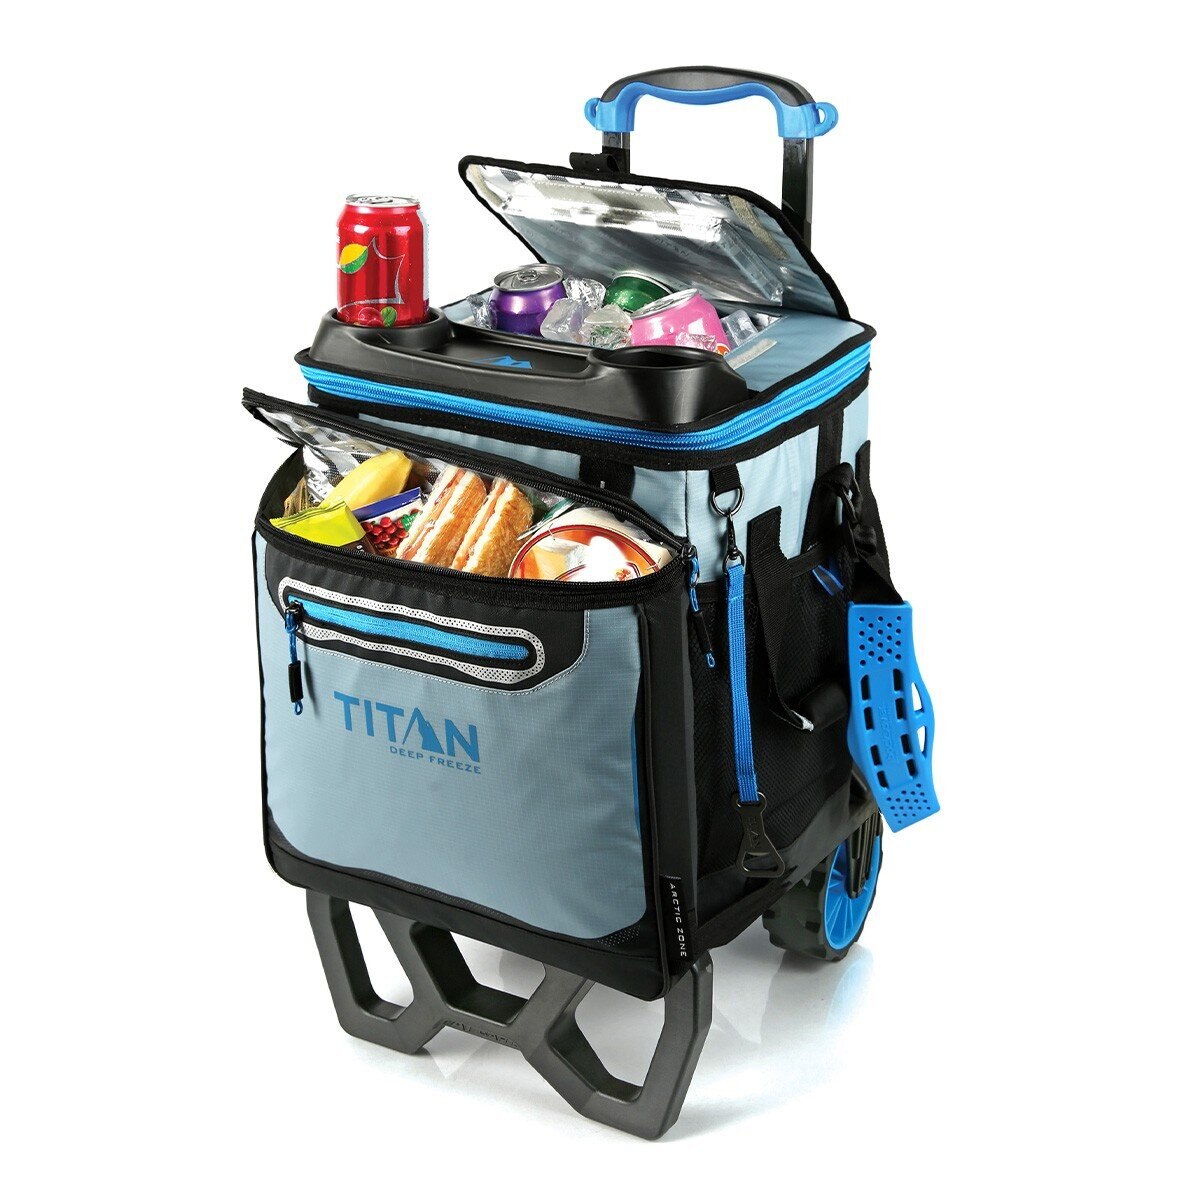 Titan 22.5公升 60罐裝軟式冰桶手拉車